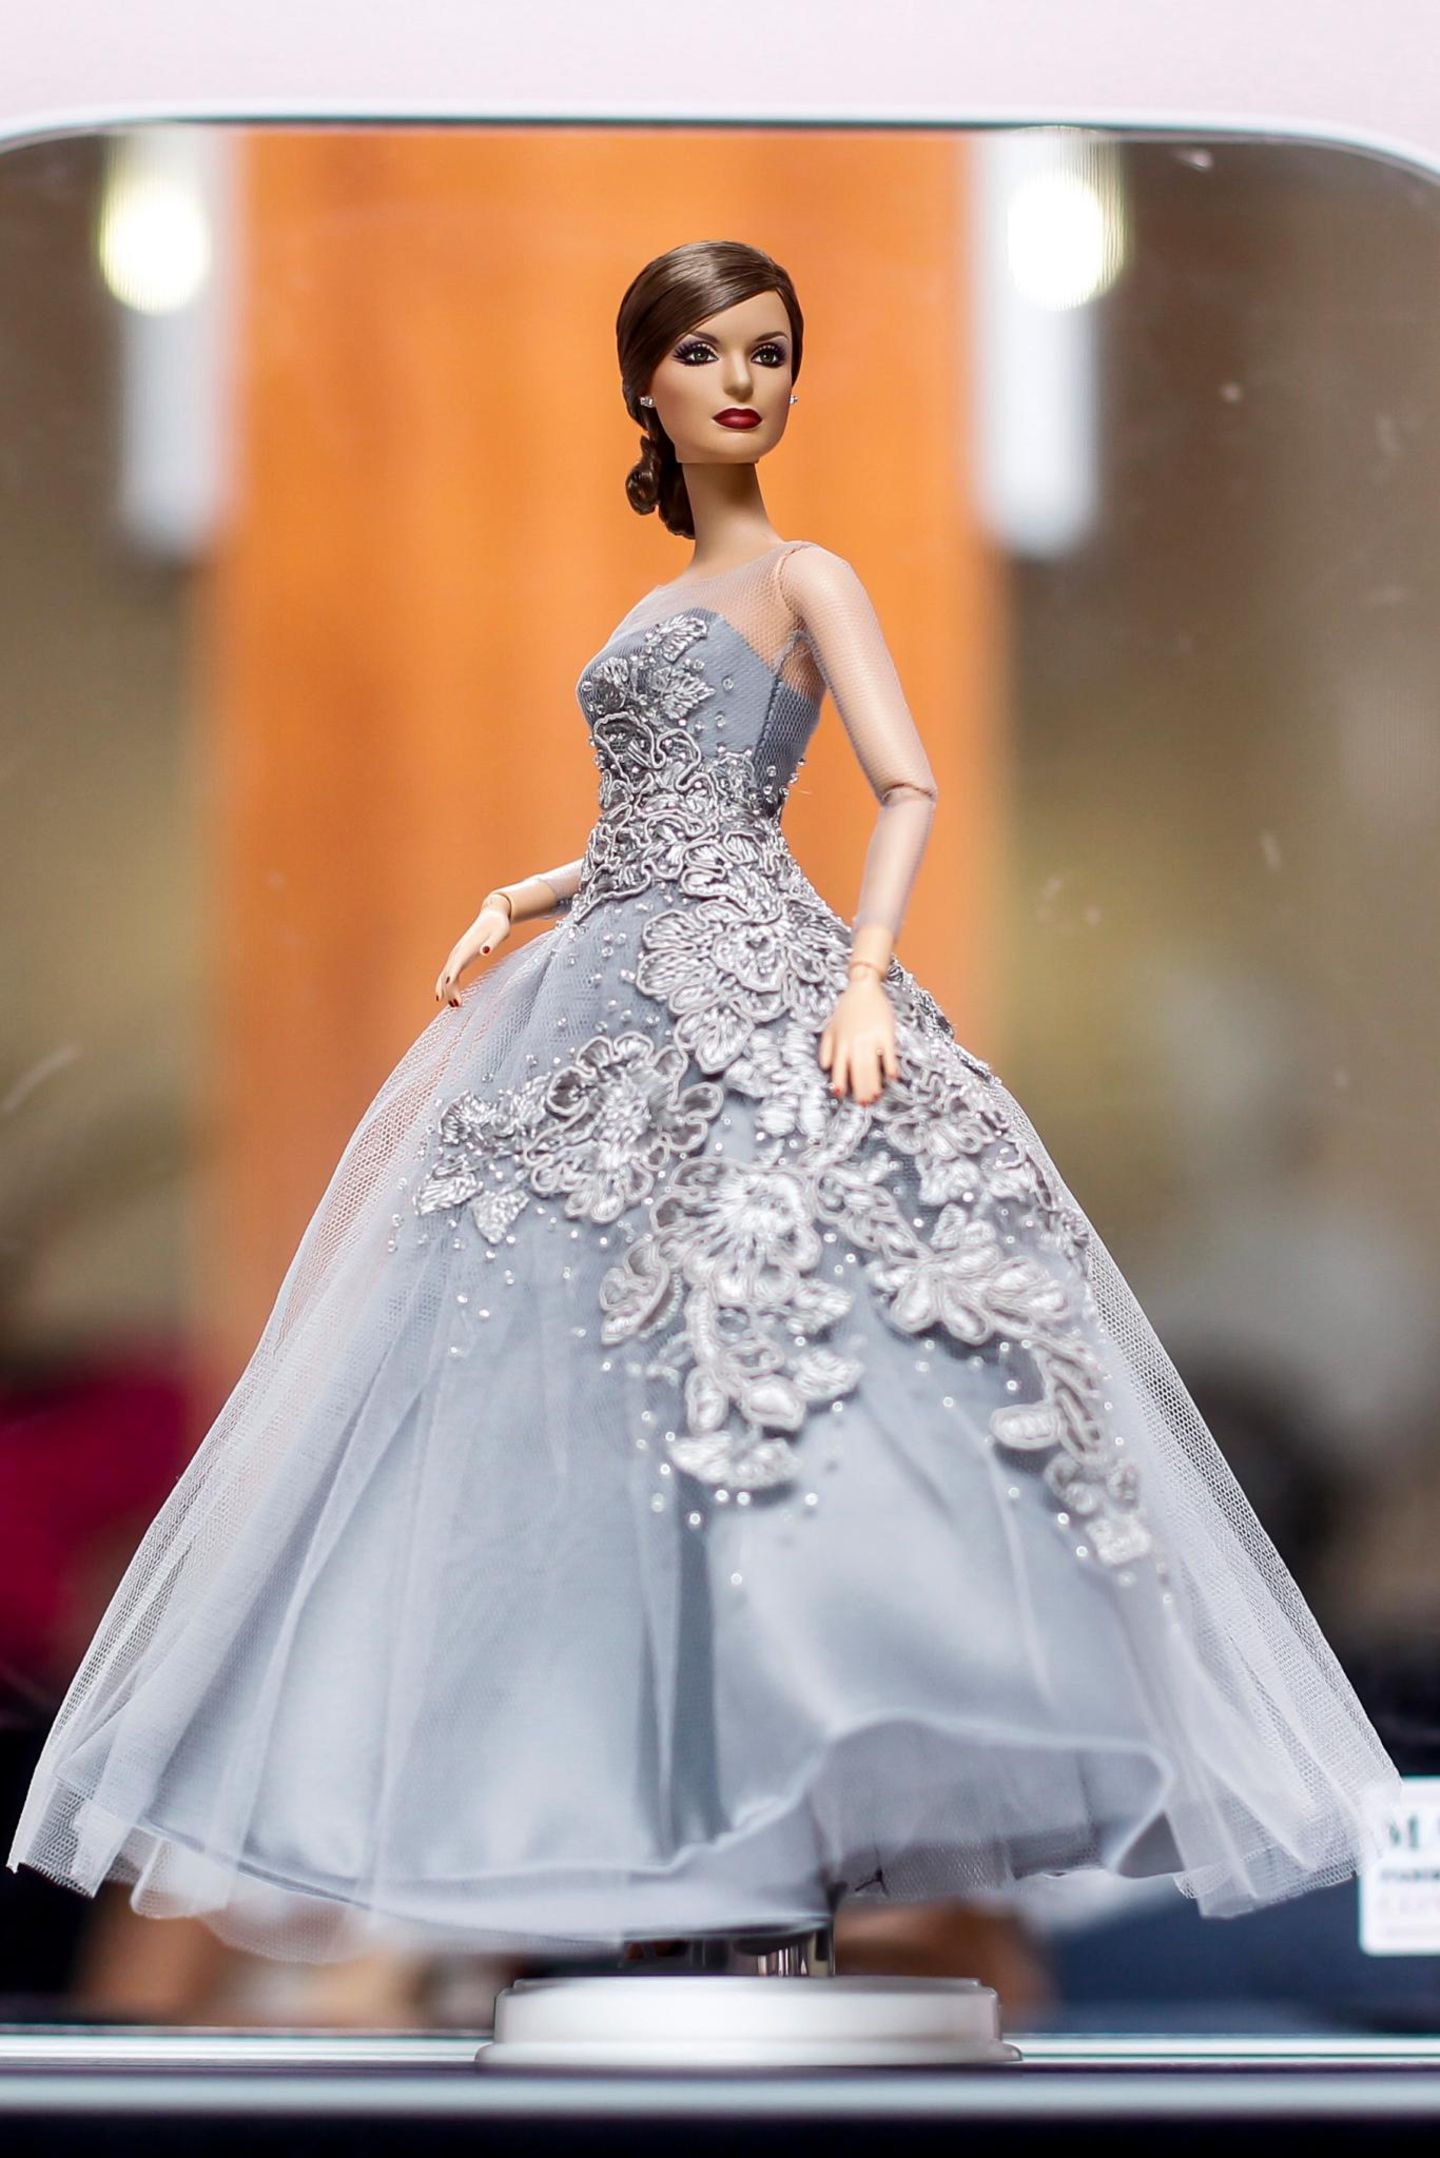 Diese Barbie ist fast so schön wie das stylische Original Königin Letizia. Die Puppe kann man in Madrid im Museum bestaunen.